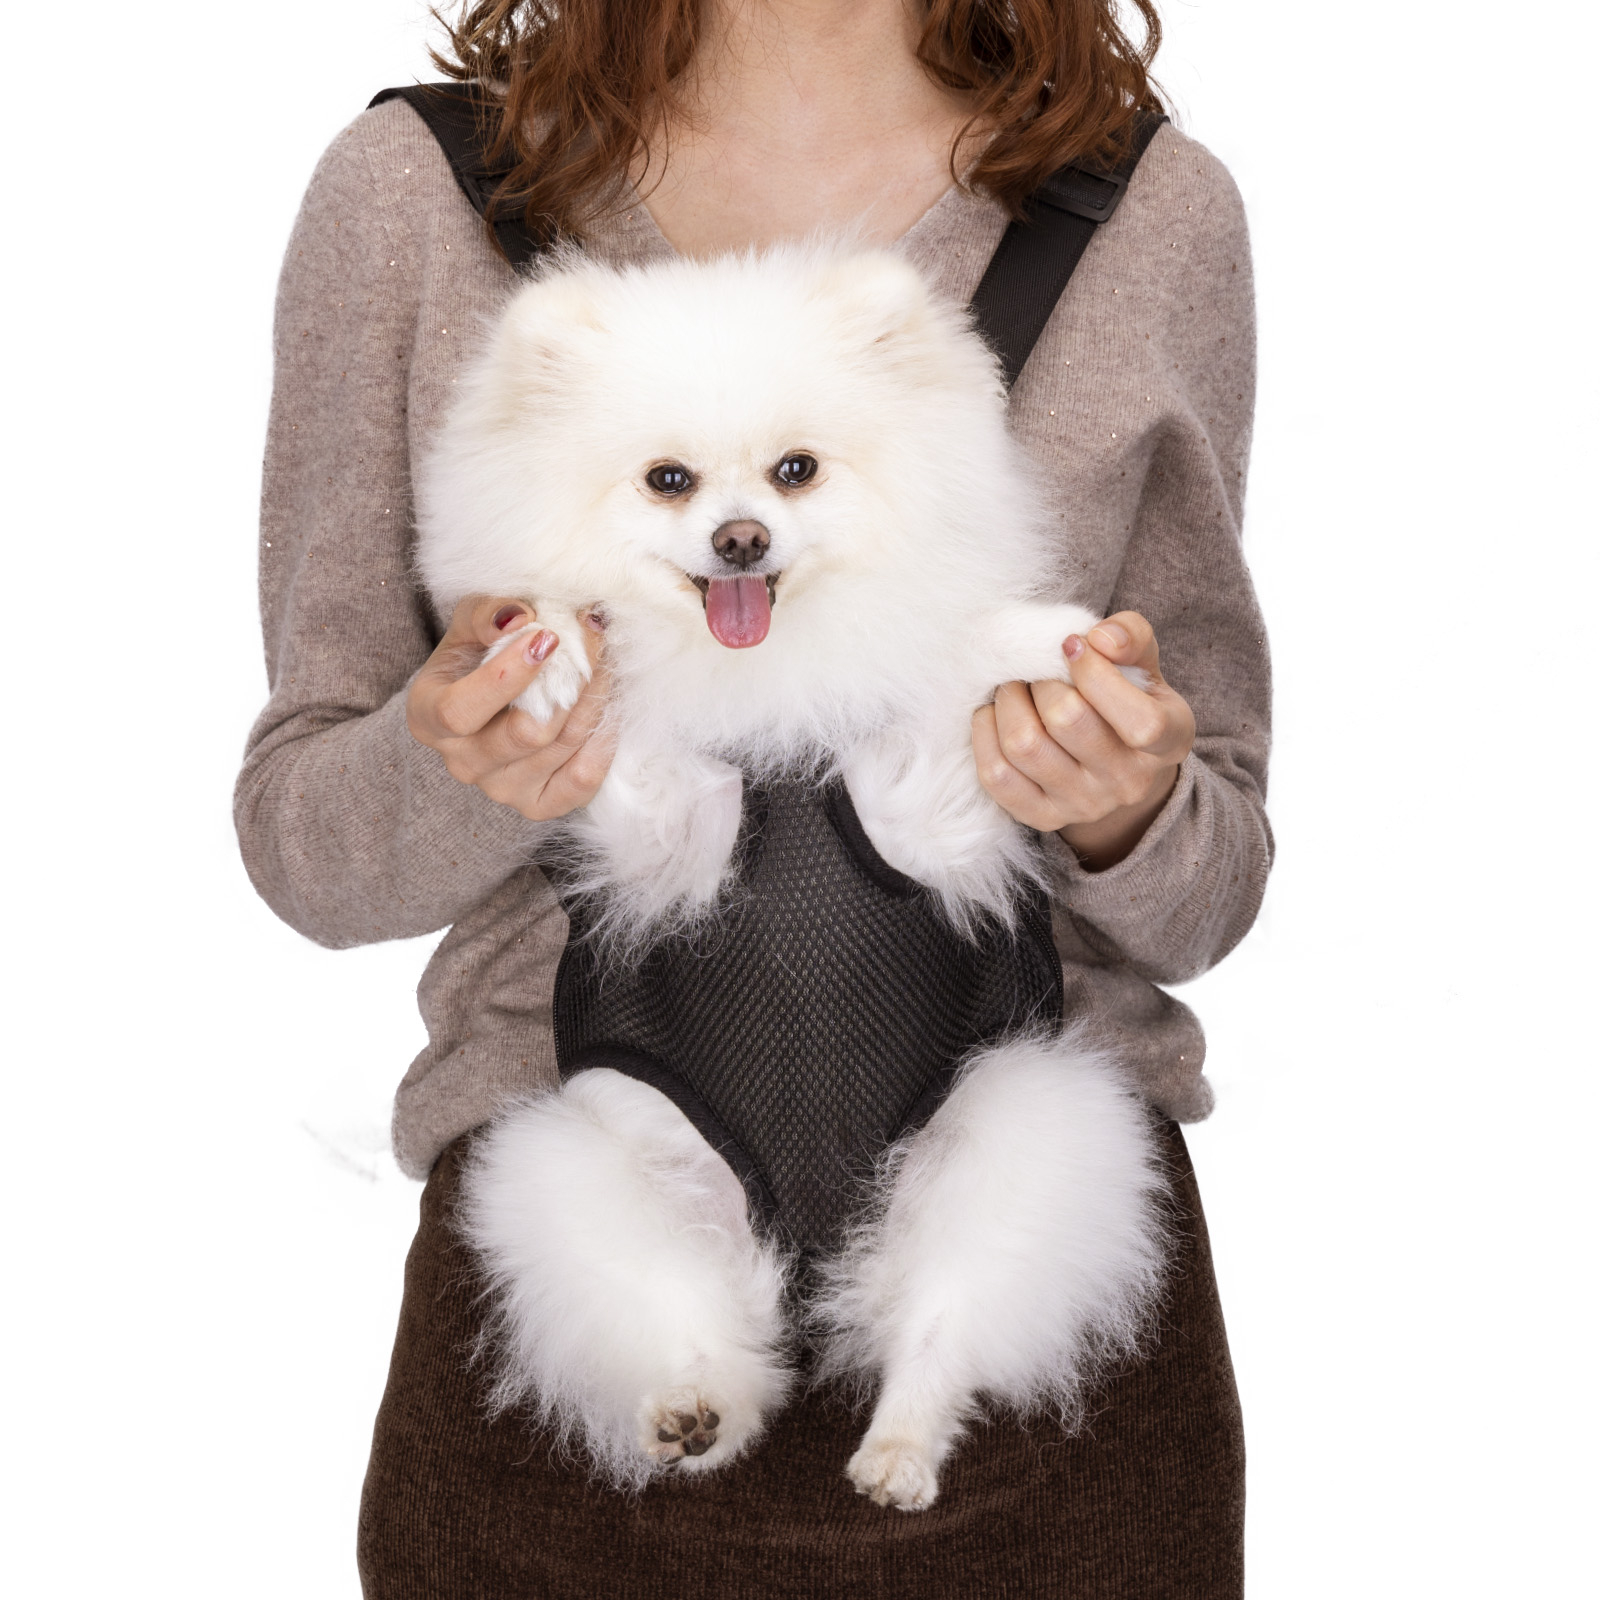 Nobleza Buikdrager voor hondje of kat tot 3,5kg